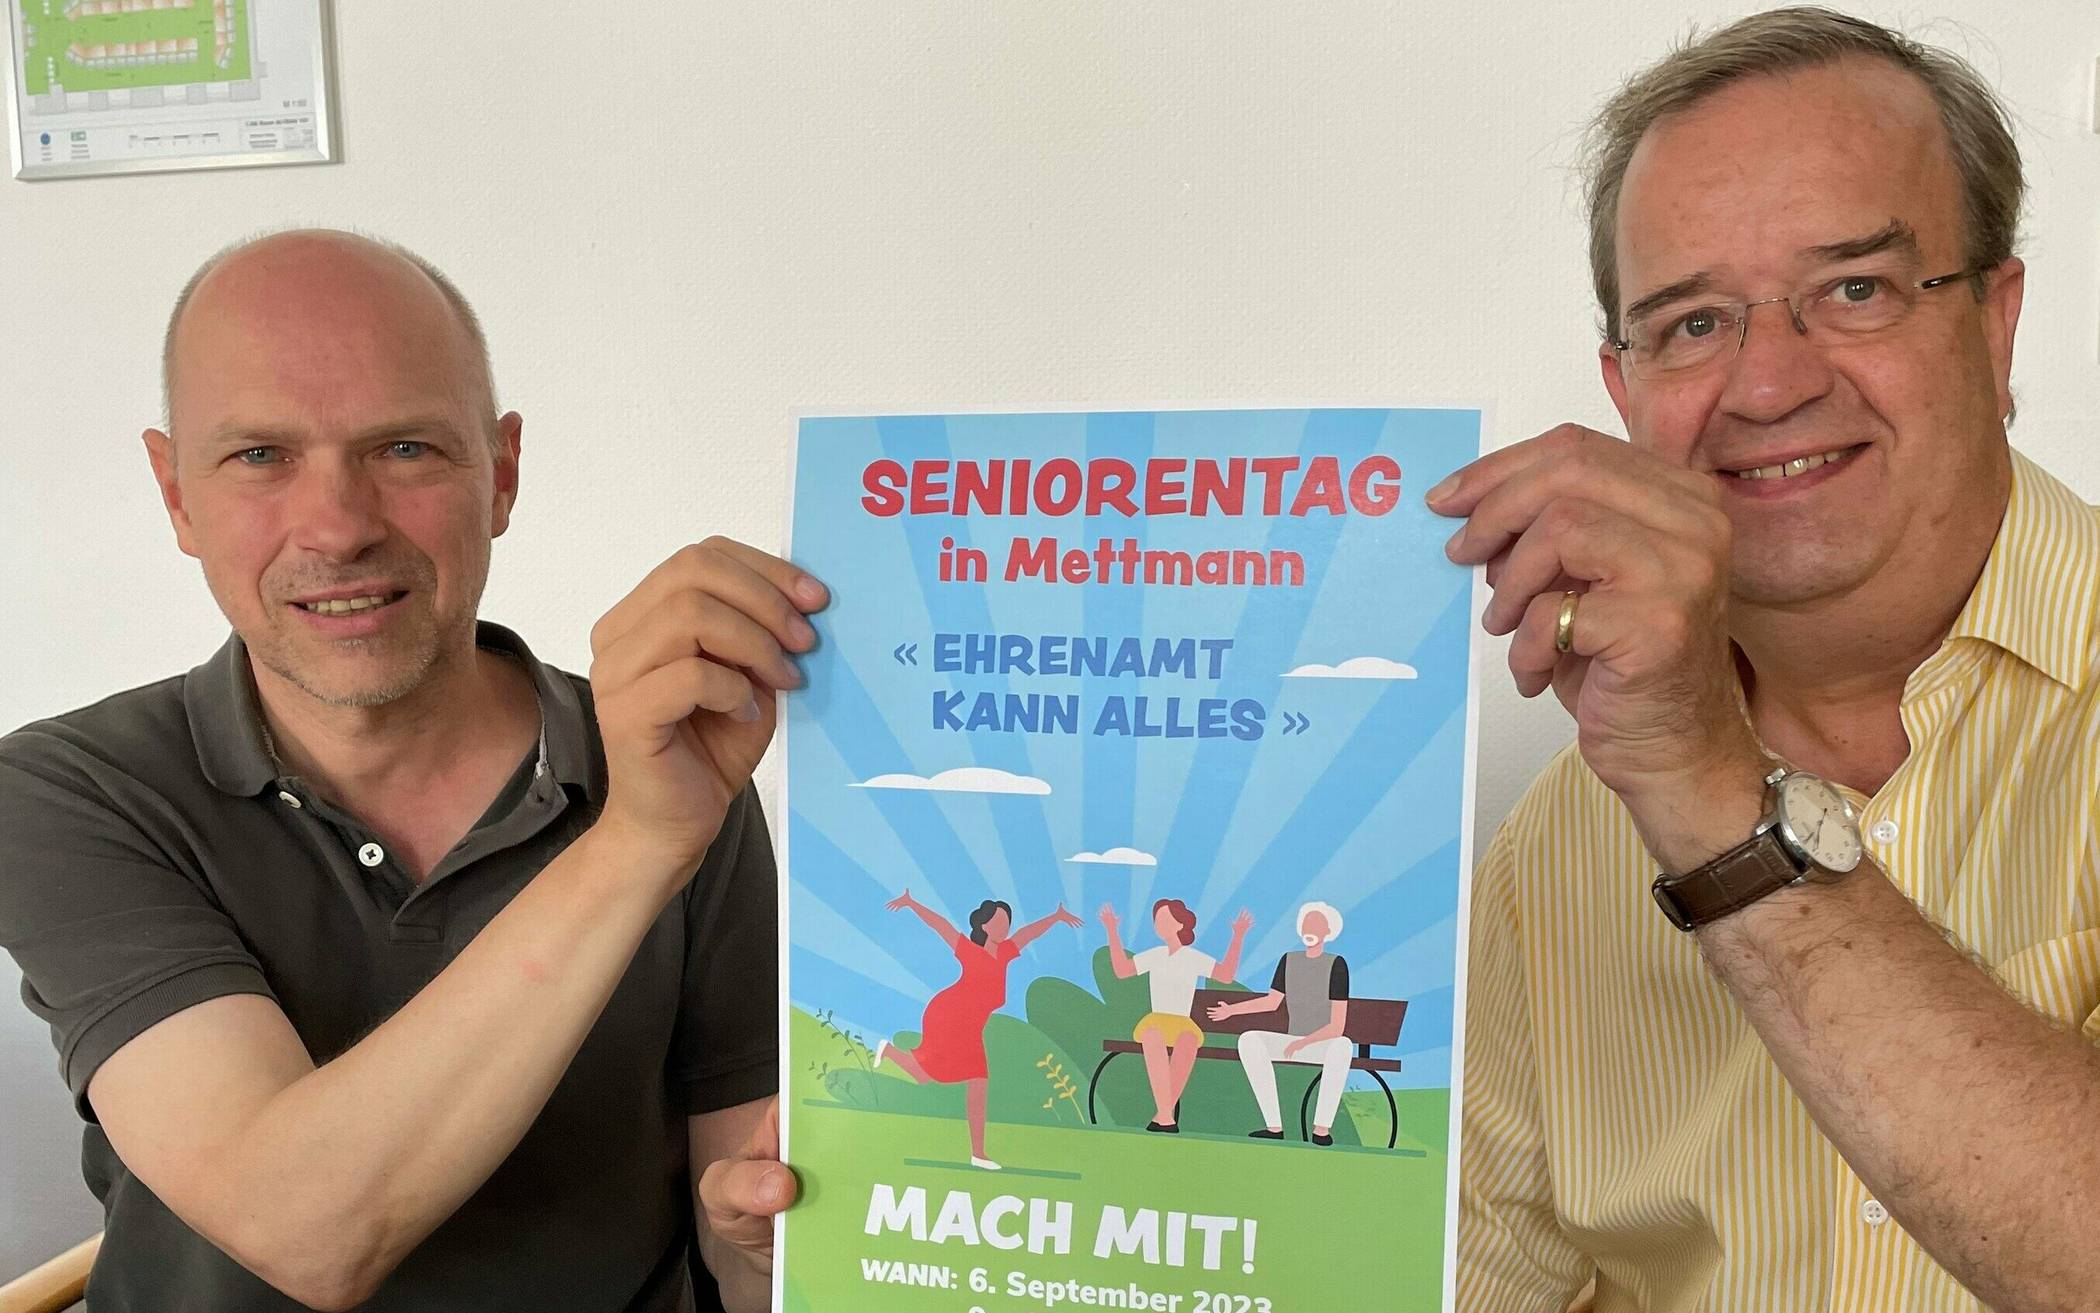  Stefan Wigge (r.) und Oliver Pahl mit dem Plakat des Seniorentages am 6. September. Foto: Kreisstadt Mettmann 